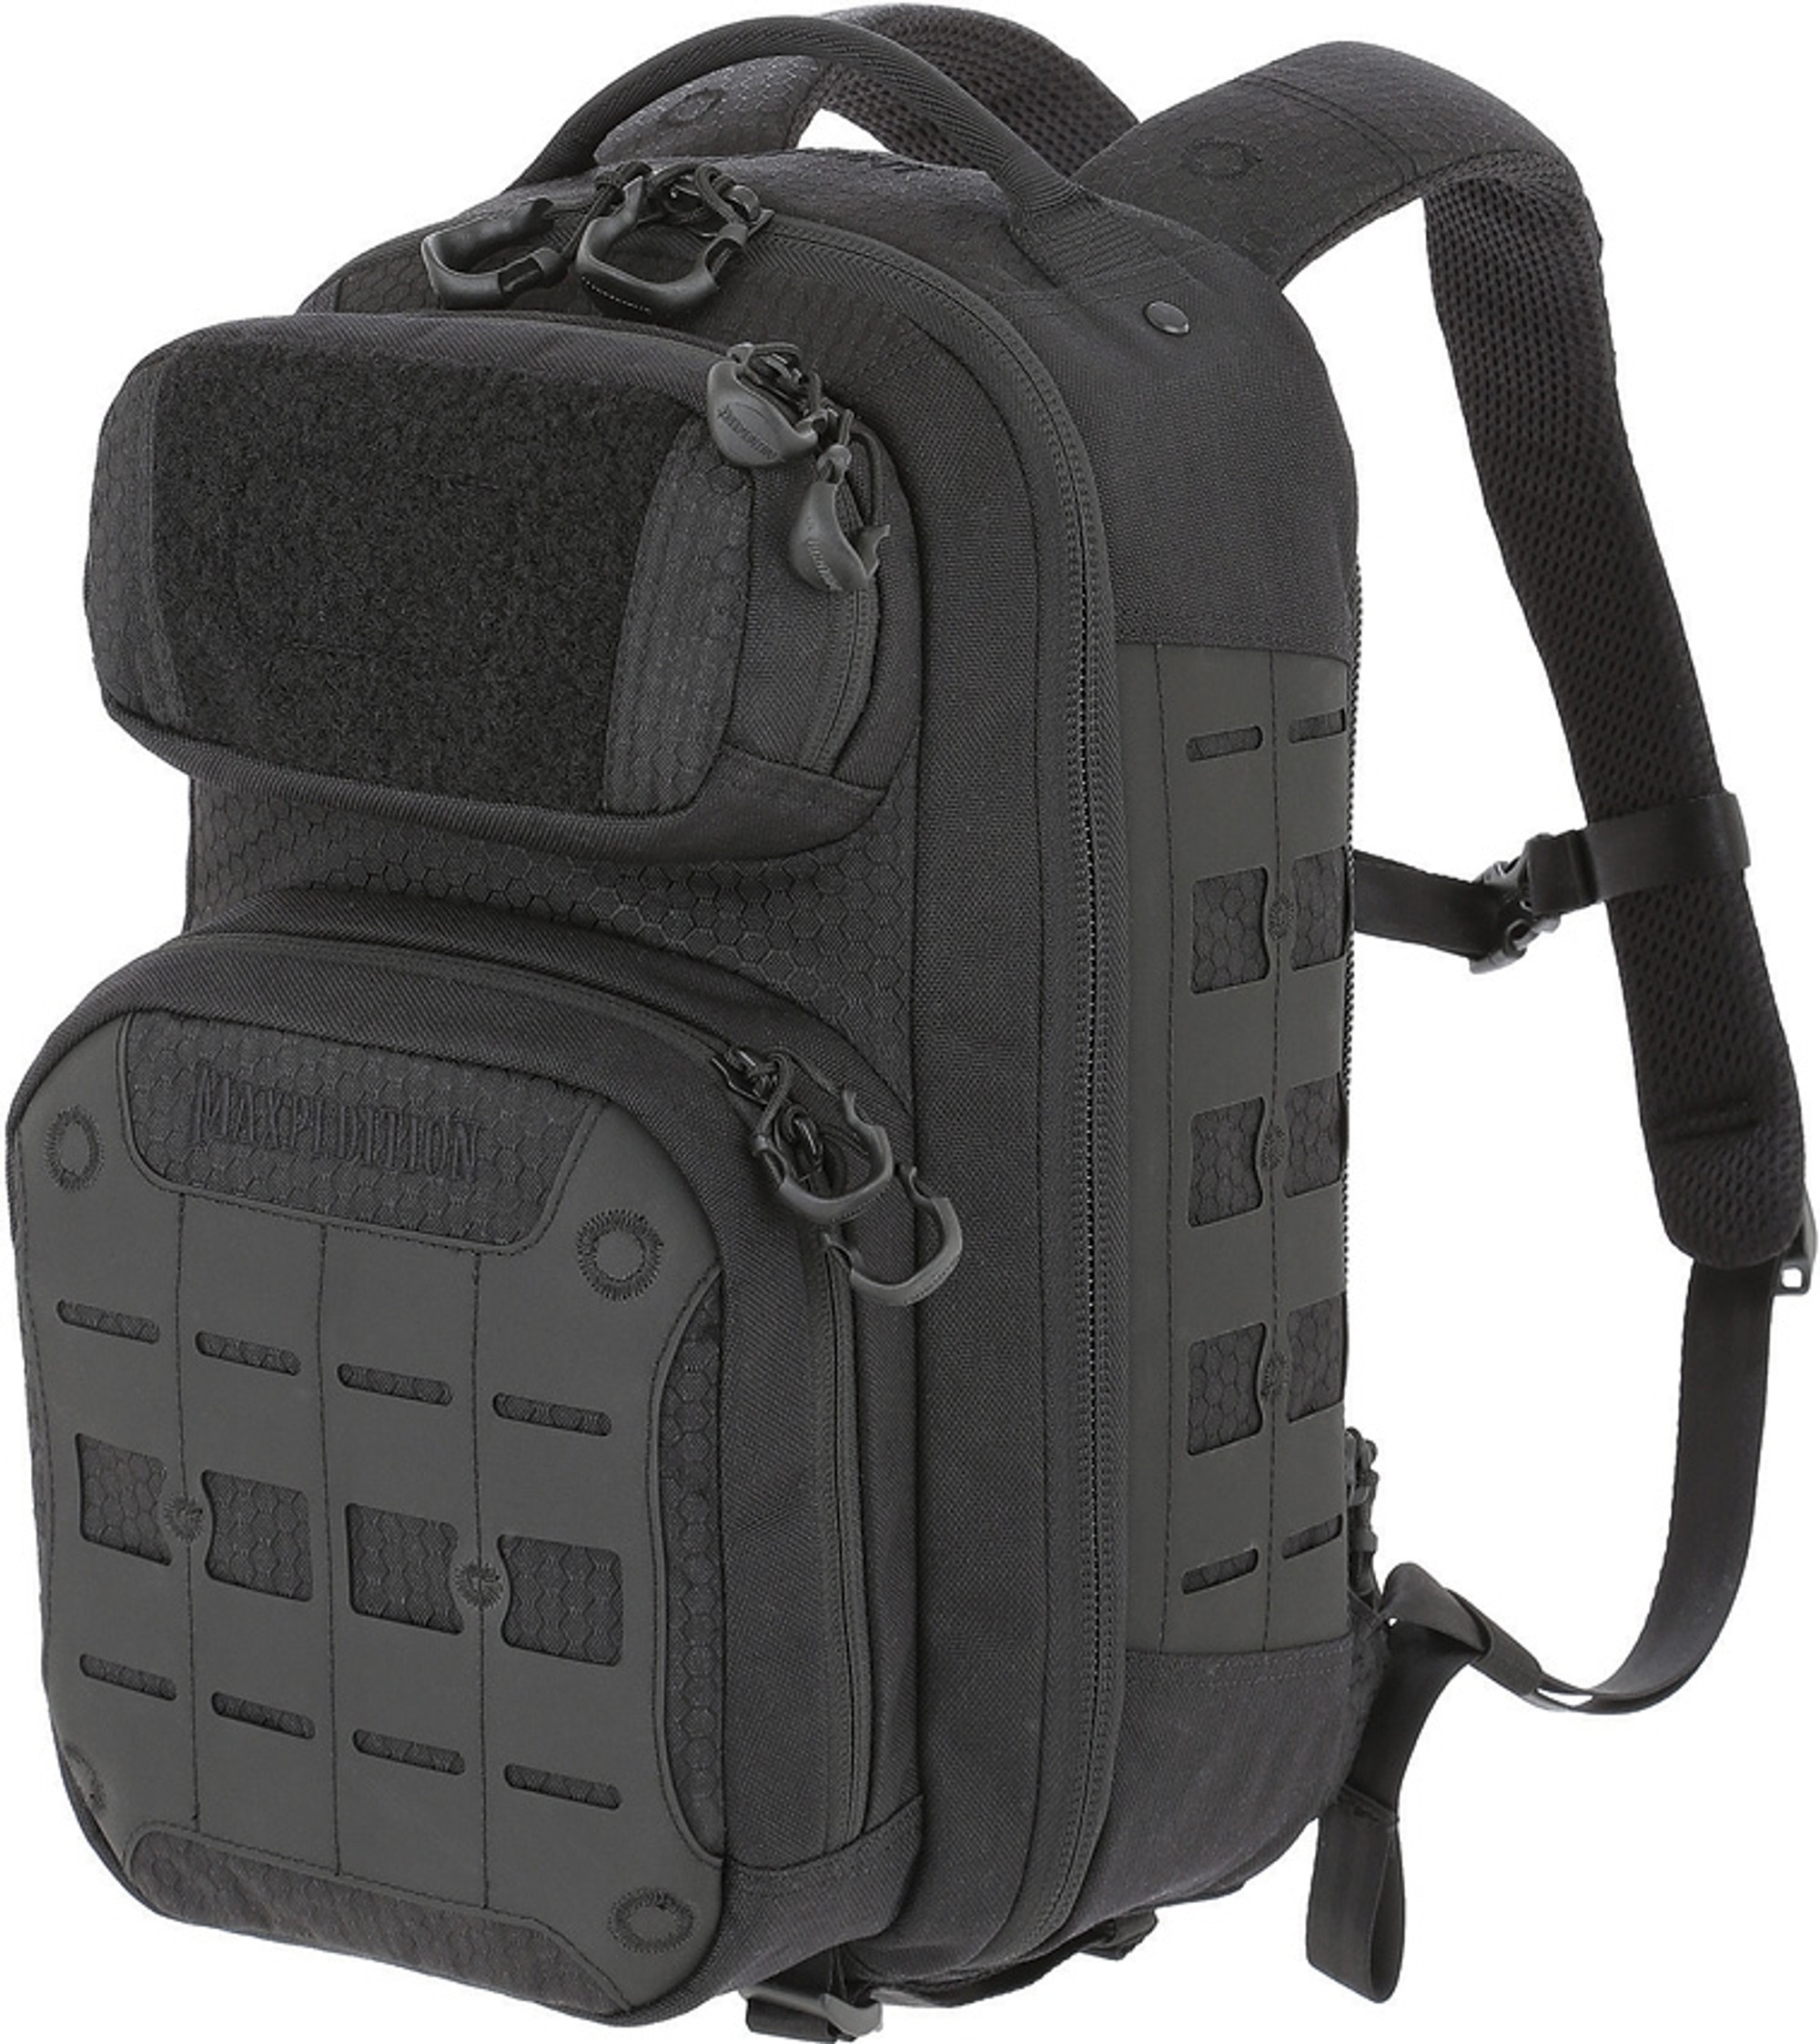 AGR Riftpoint Backpack Black